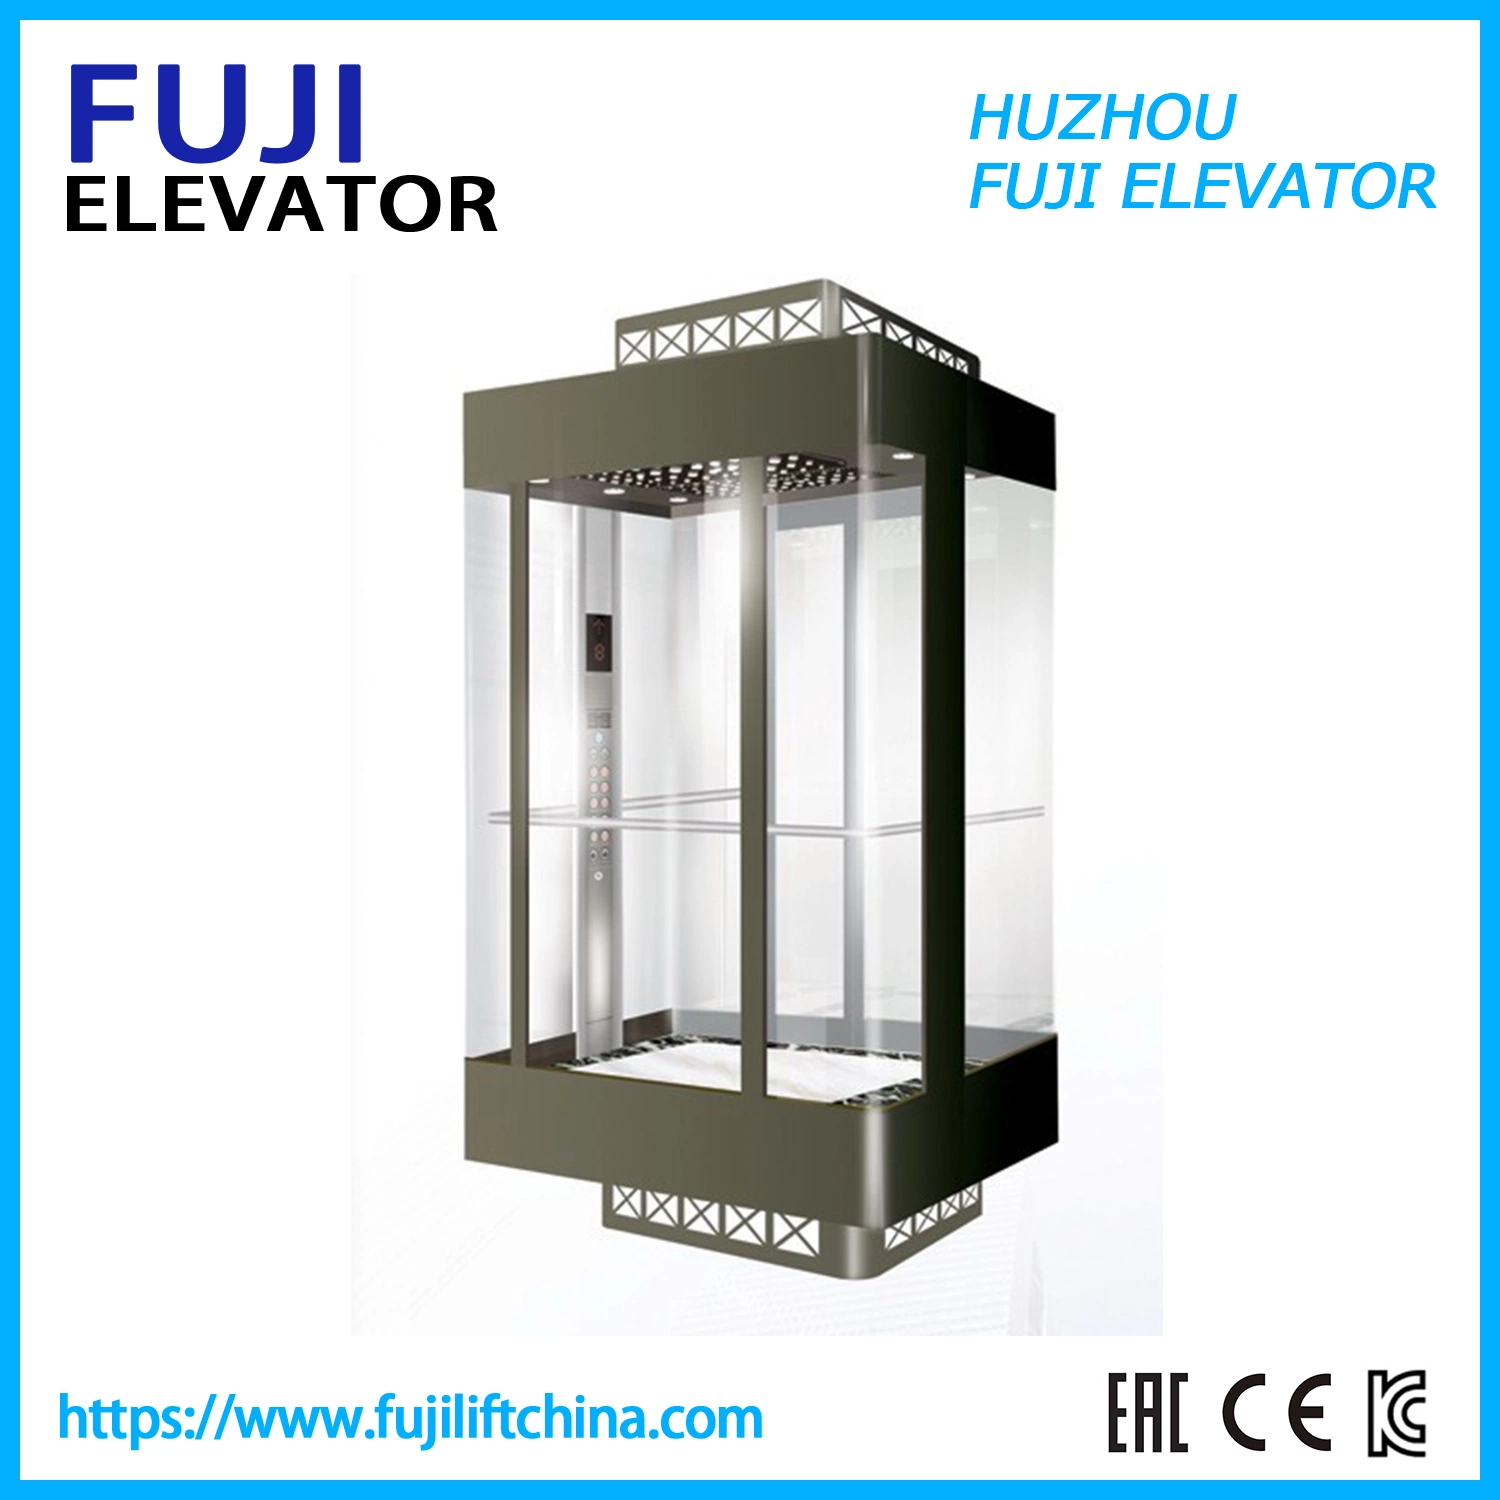 Ascenseur de passagers Ascenseur d'observation FUJI Chine Usine Ascenseurs panoramiques avec porte vitrée d'ascenseur Ascenseur résidentiel d'observation